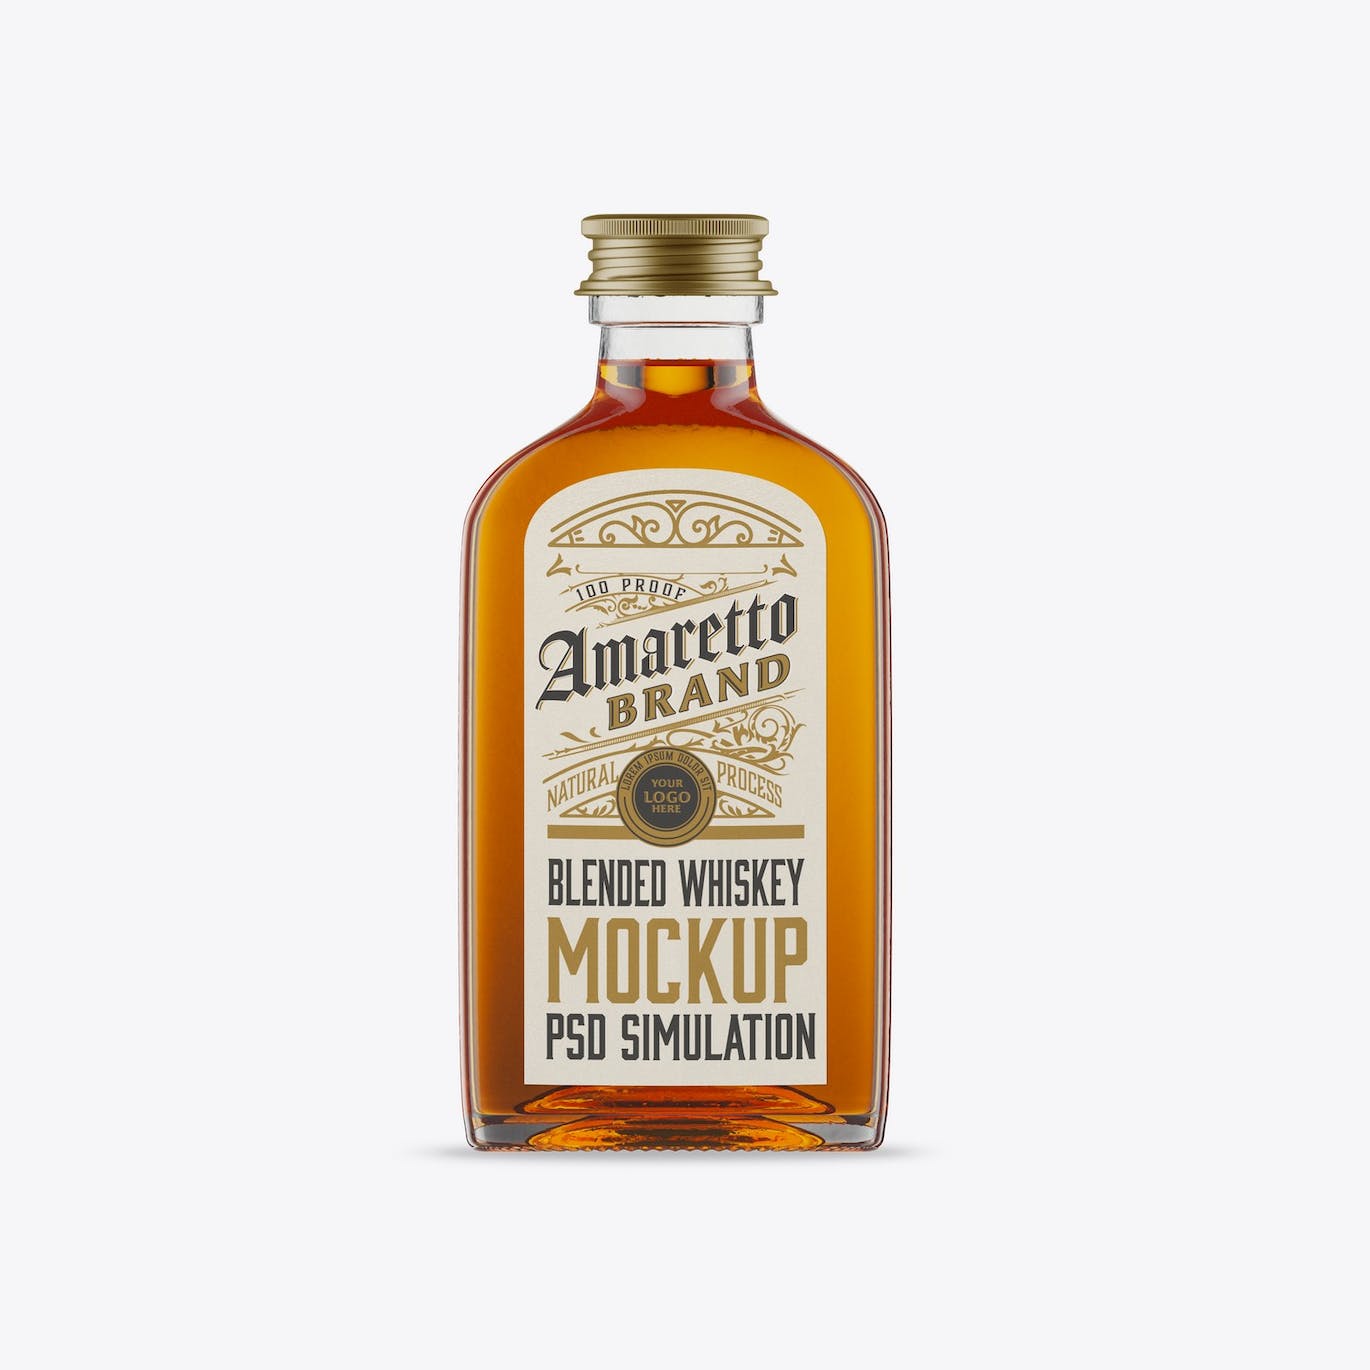 扁平威士忌玻璃瓶设计样机 Flat Whiskey Glass Bottle Mockup 样机素材 第2张